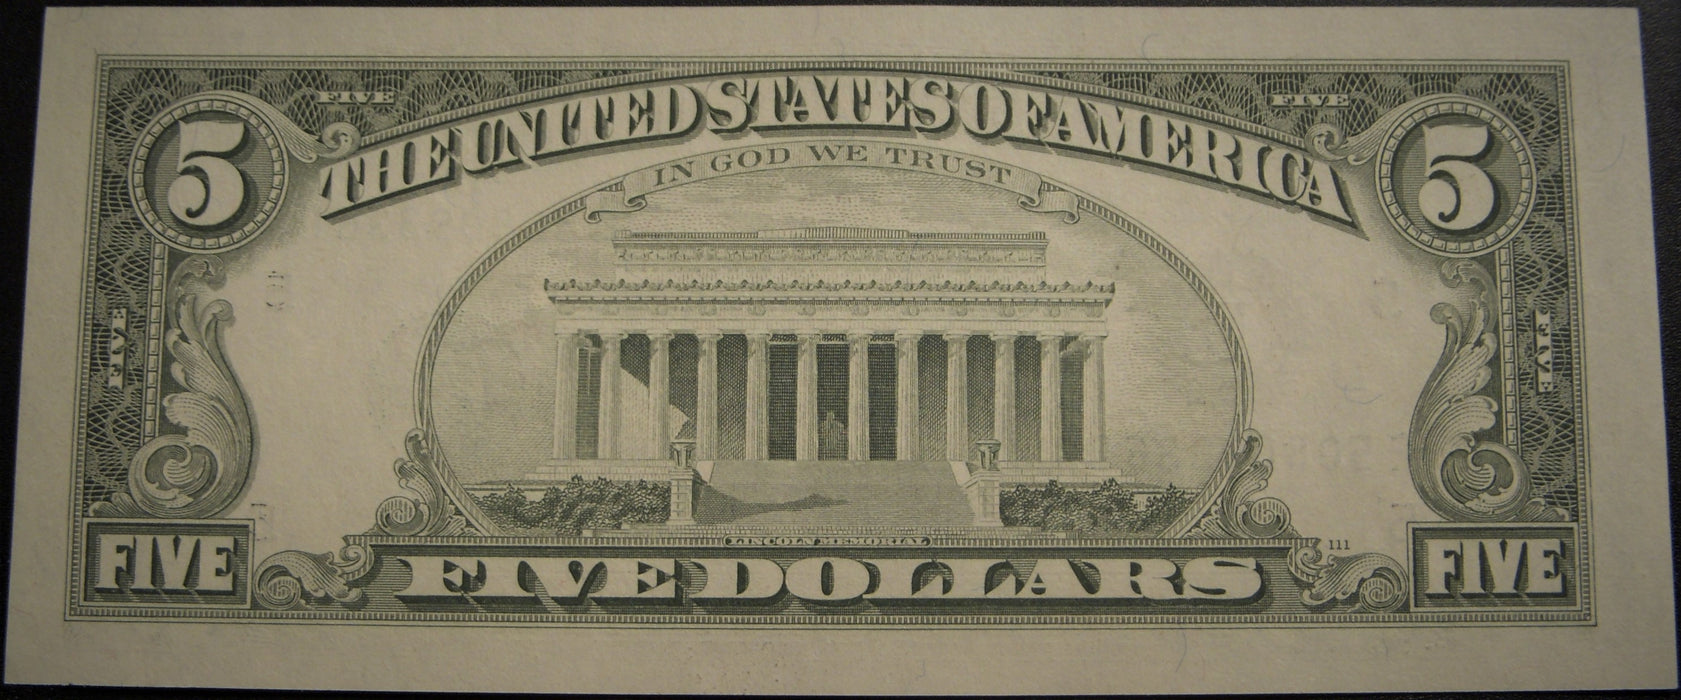 1988A (E) $5 Federal Reserve Note - FR# 1980E